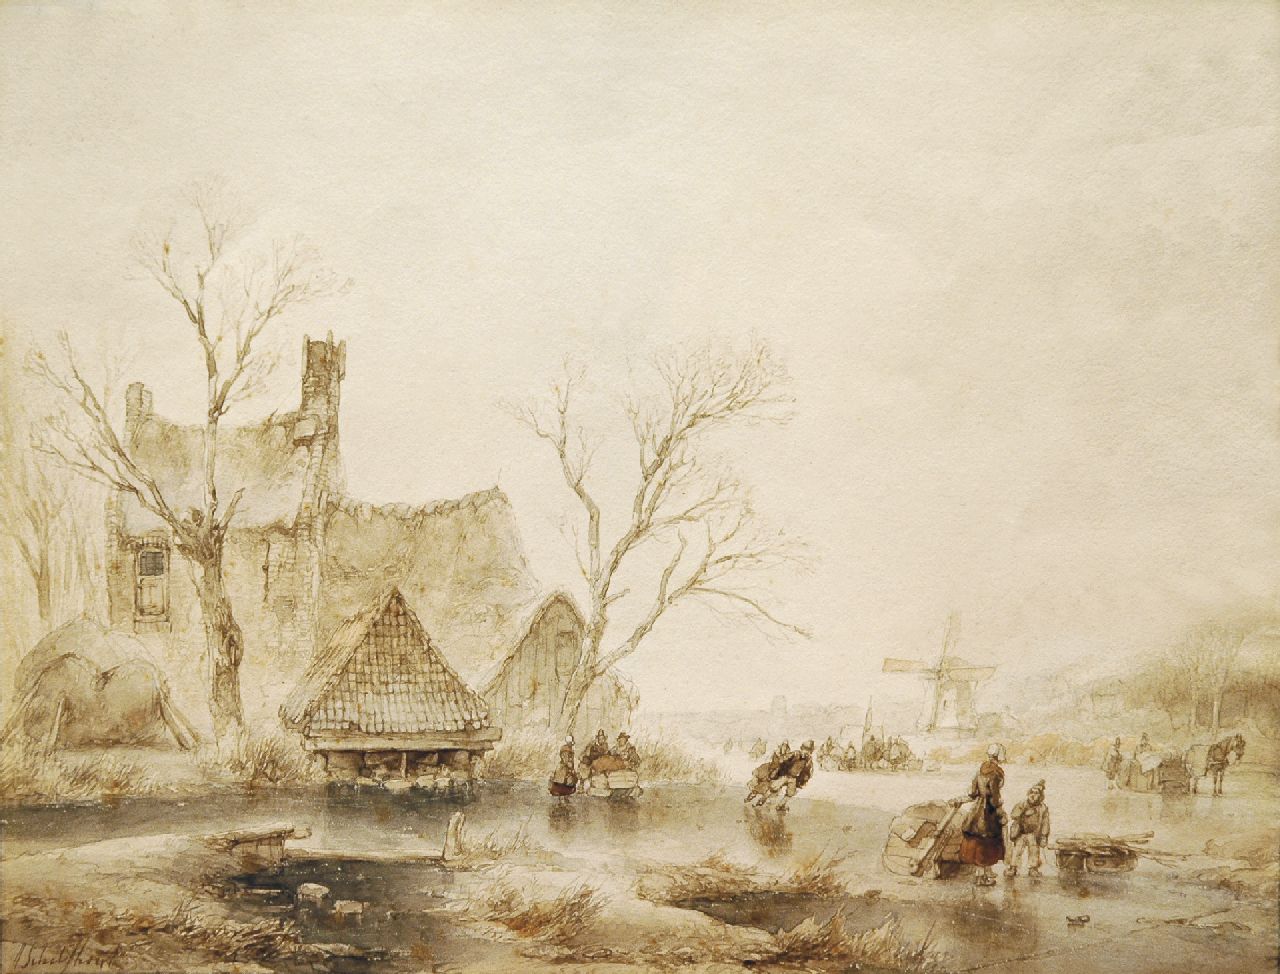 Schelfhout A.  | Andreas Schelfhout, Skaters in a winter landscape, Bleistift, Pinsel in brauner und schwarzer Tinte auf Papier 24,5 x 30,2 cm, signed l.l.